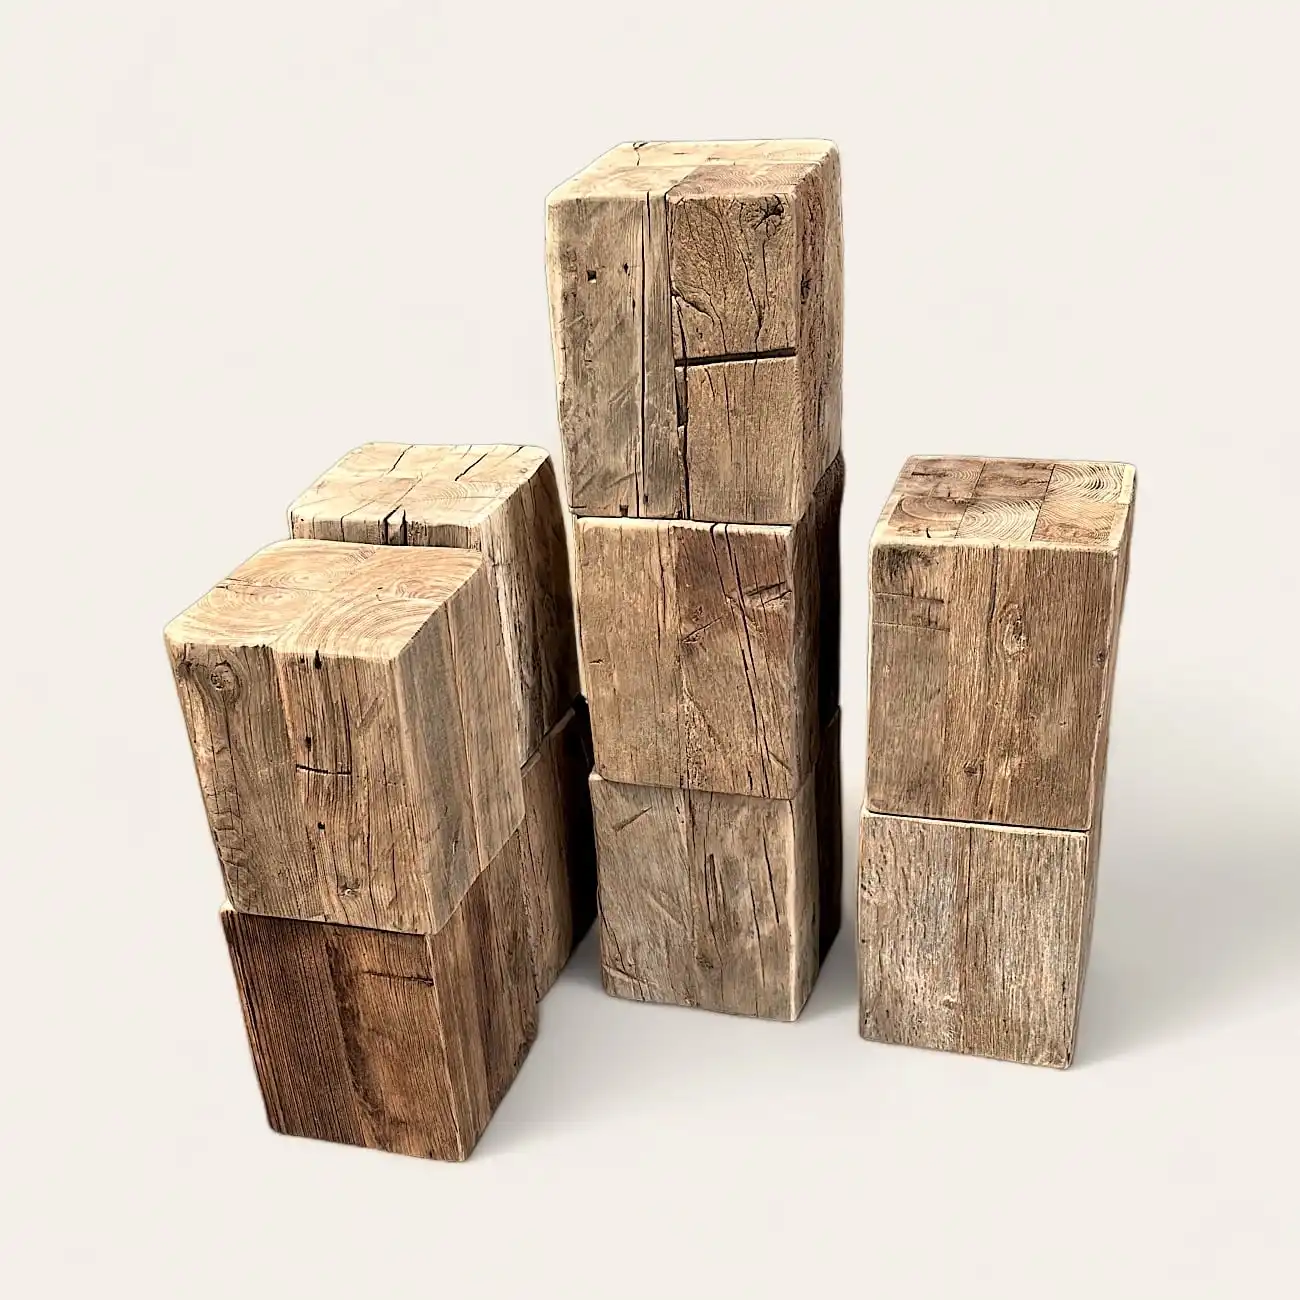  Un groupe de blocs de bois ancien. 